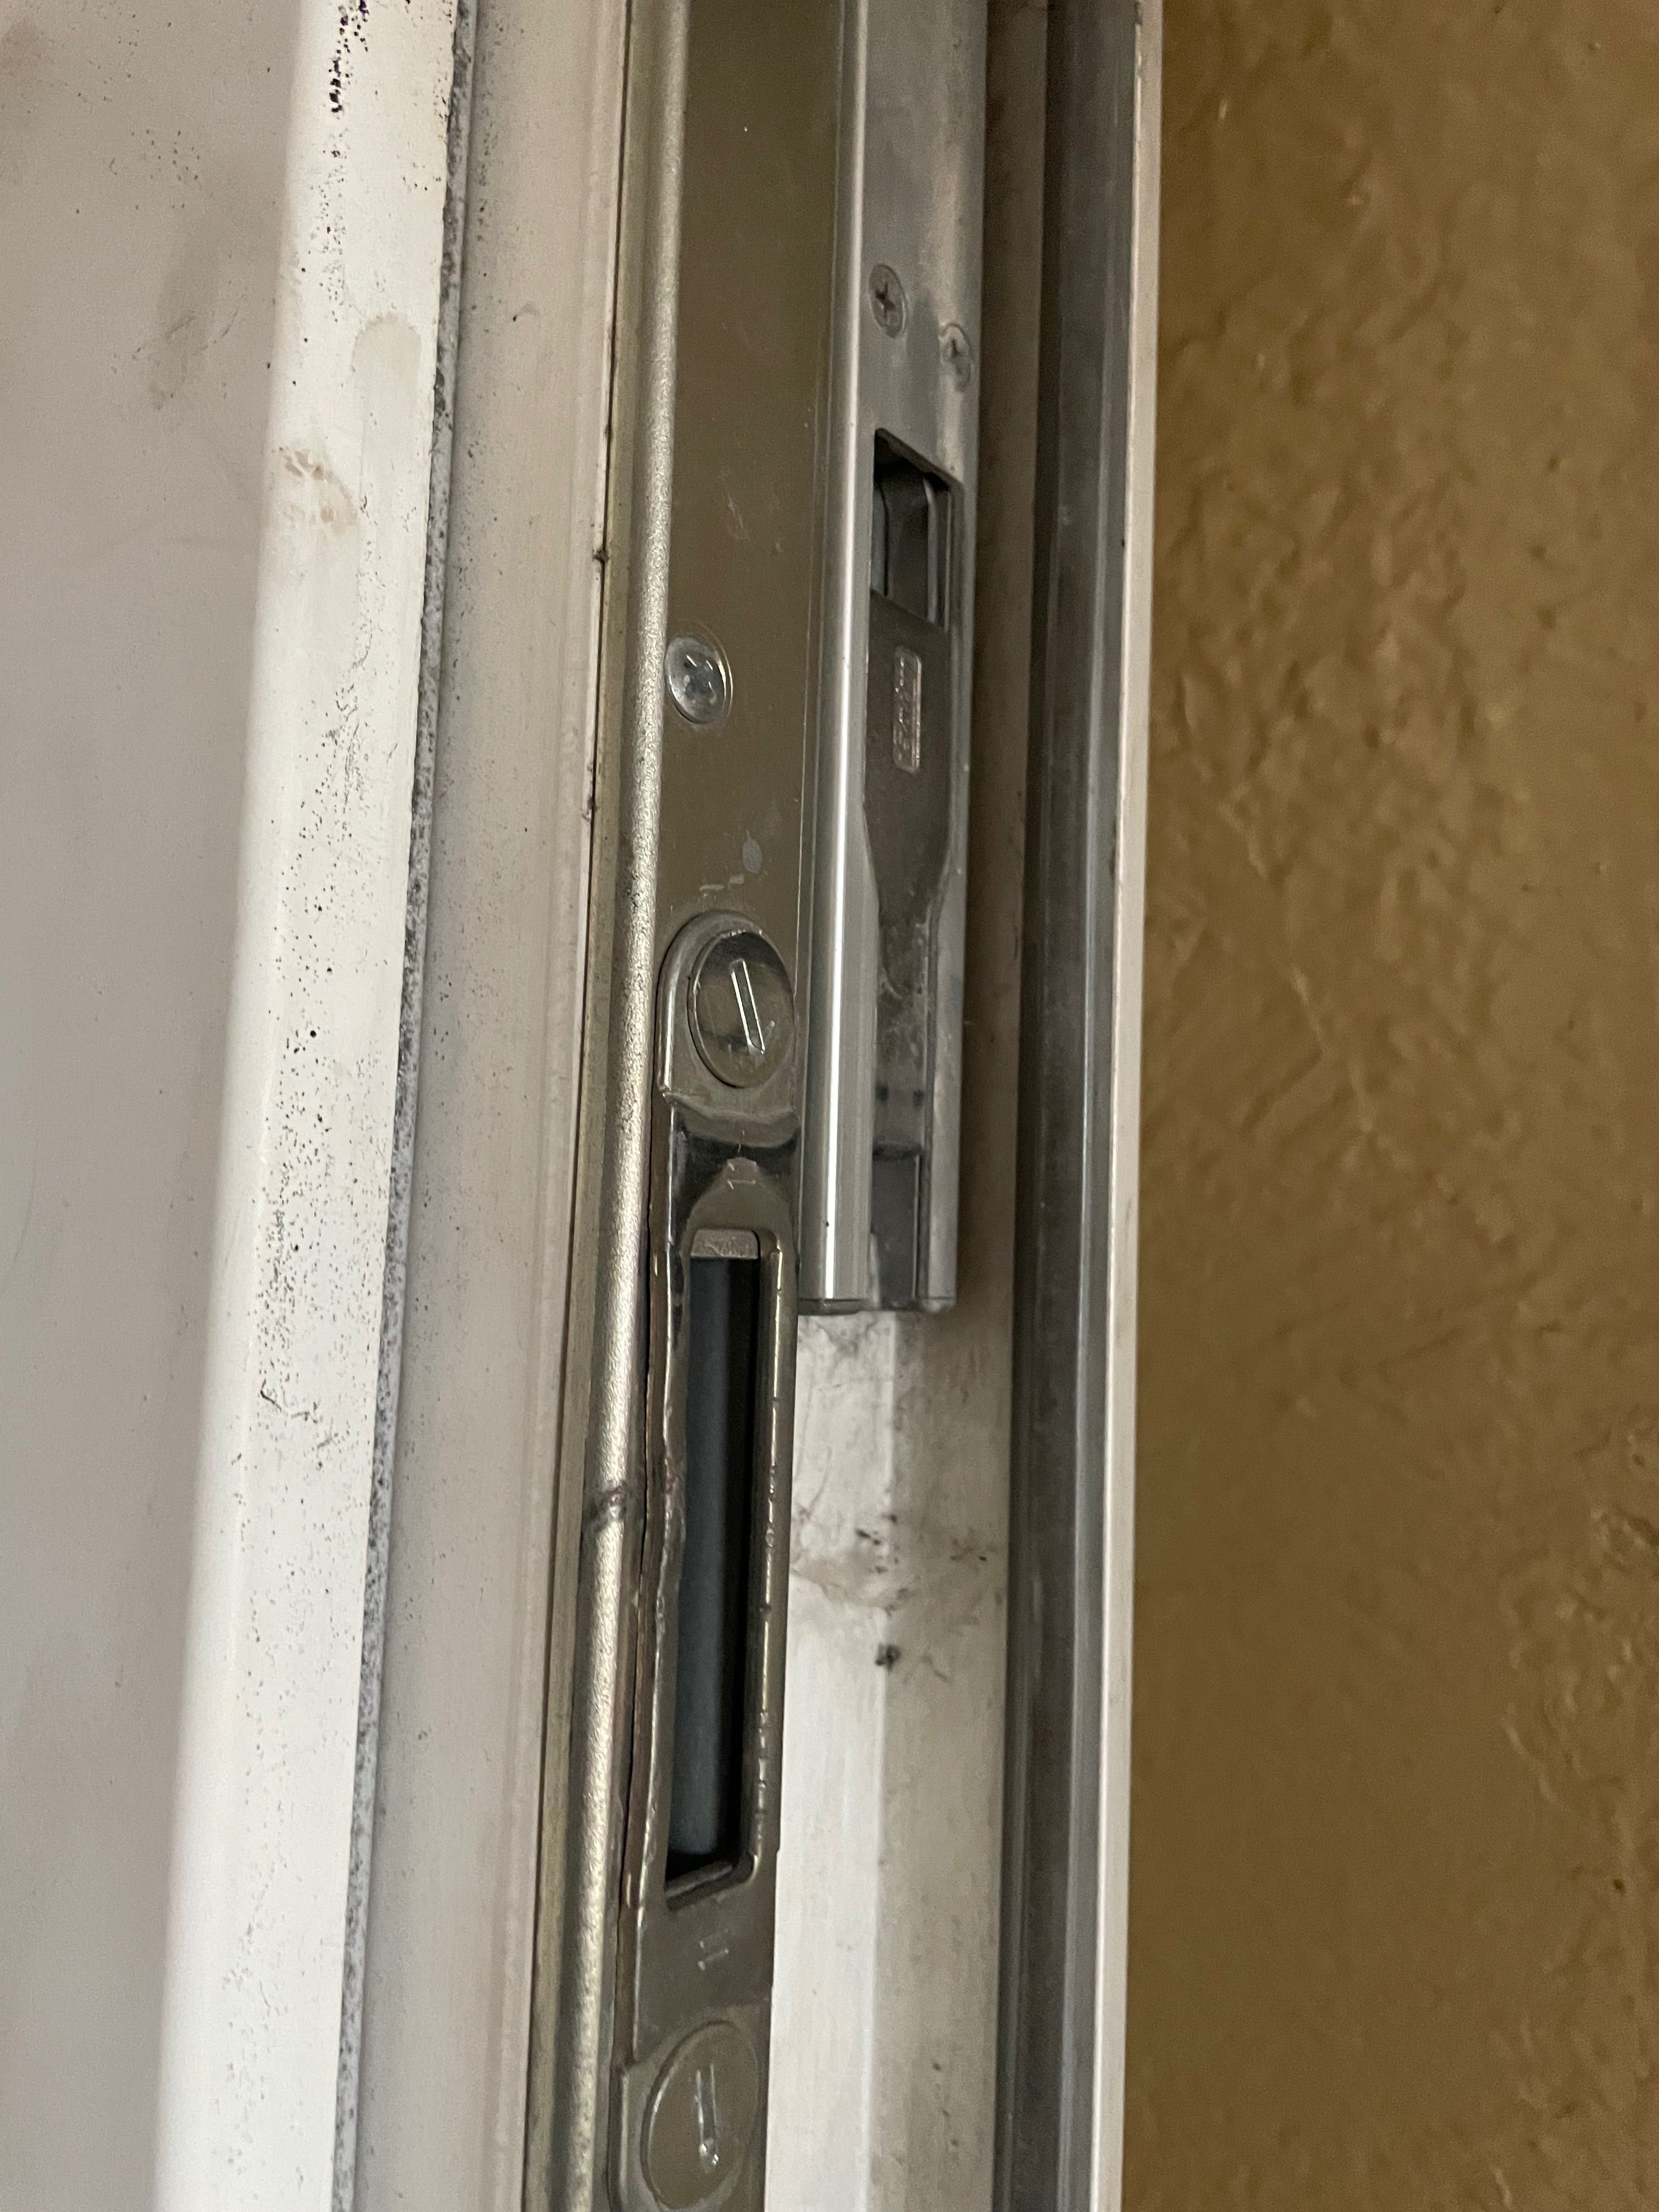 Drzwi zewnętrzne pcv wkładka, klamka solidne 180/210cm